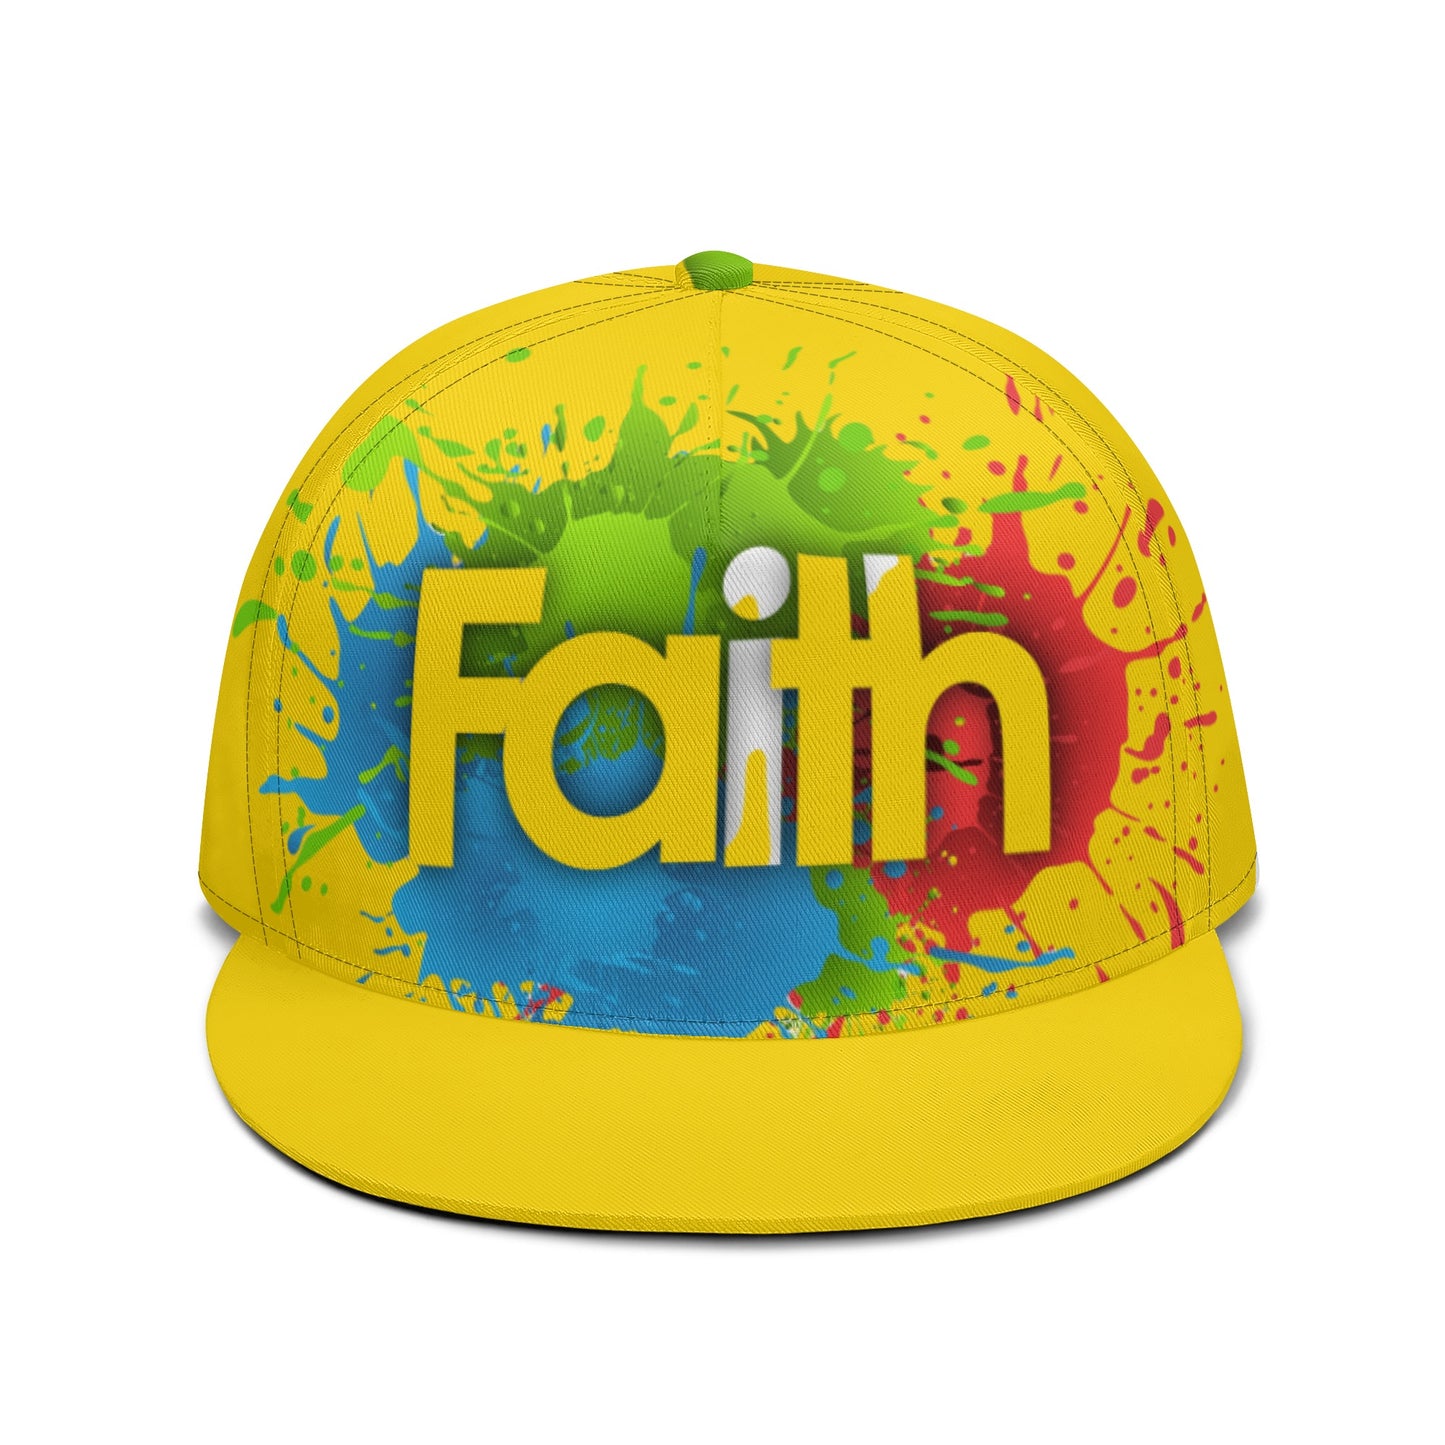 T4x Yellow Faith All Hip-hop Cap